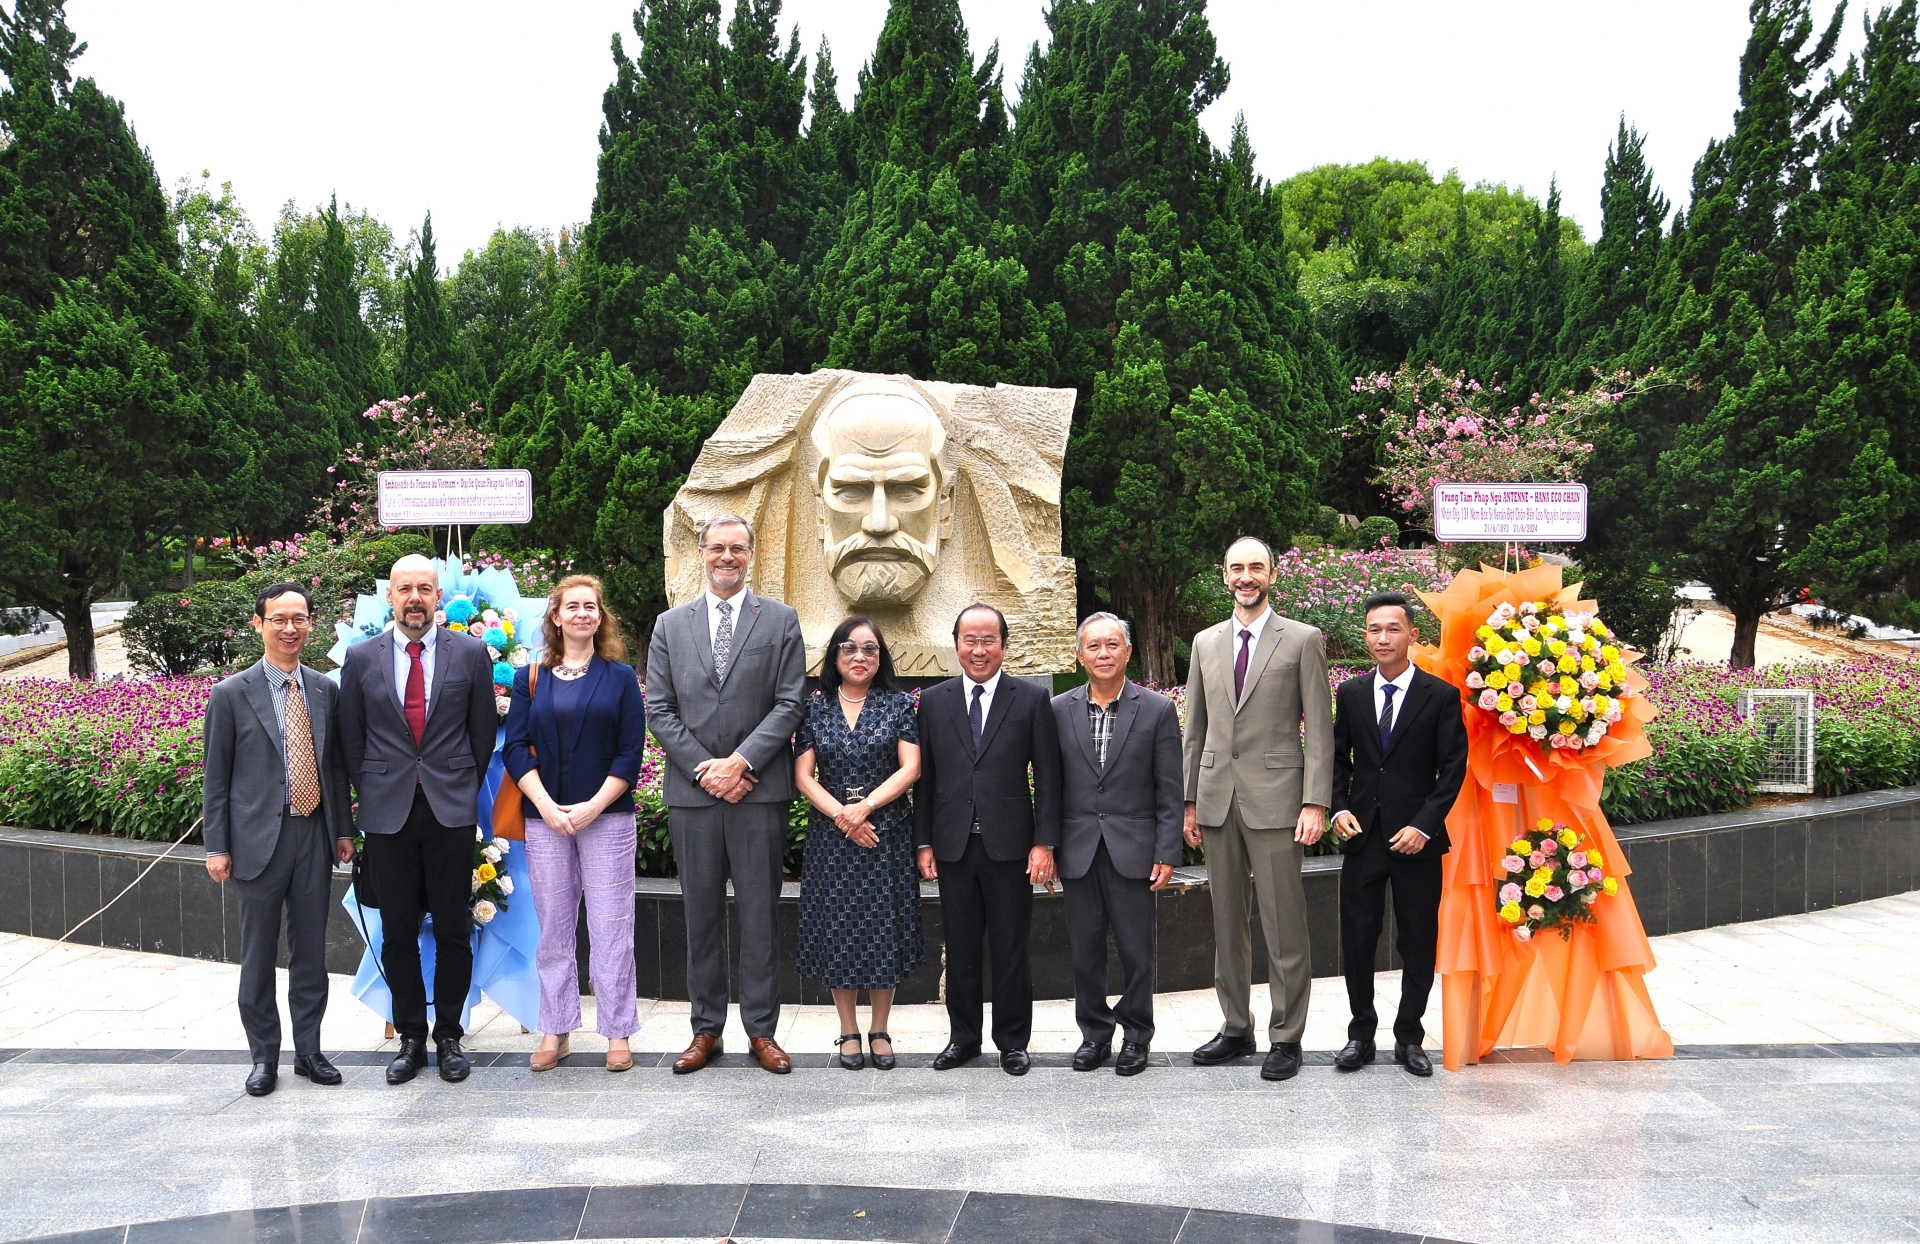 Đà Lạt: Đại sứ Cộng hòa Pháp đặt hoa tại tượng đài bác sỹ Alexandre Yersin